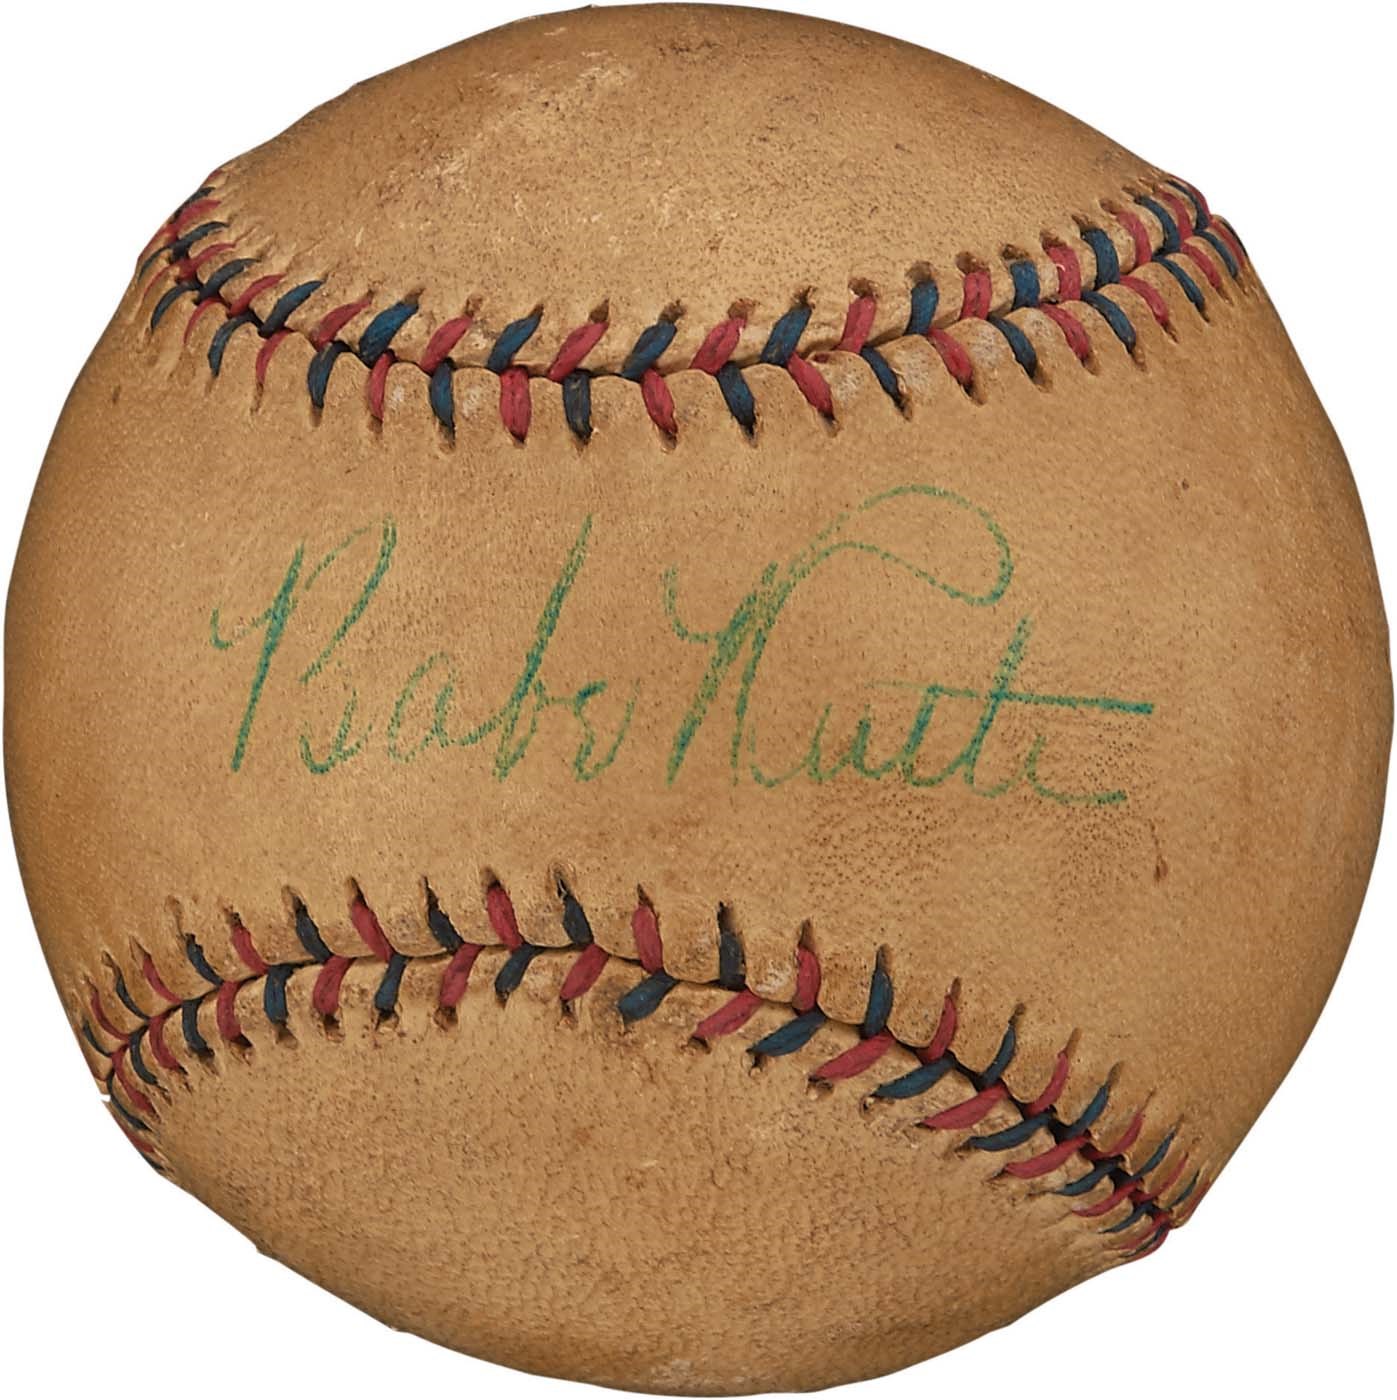 1928-32 Babe Ruth Single-Signed Baseball (PSA)